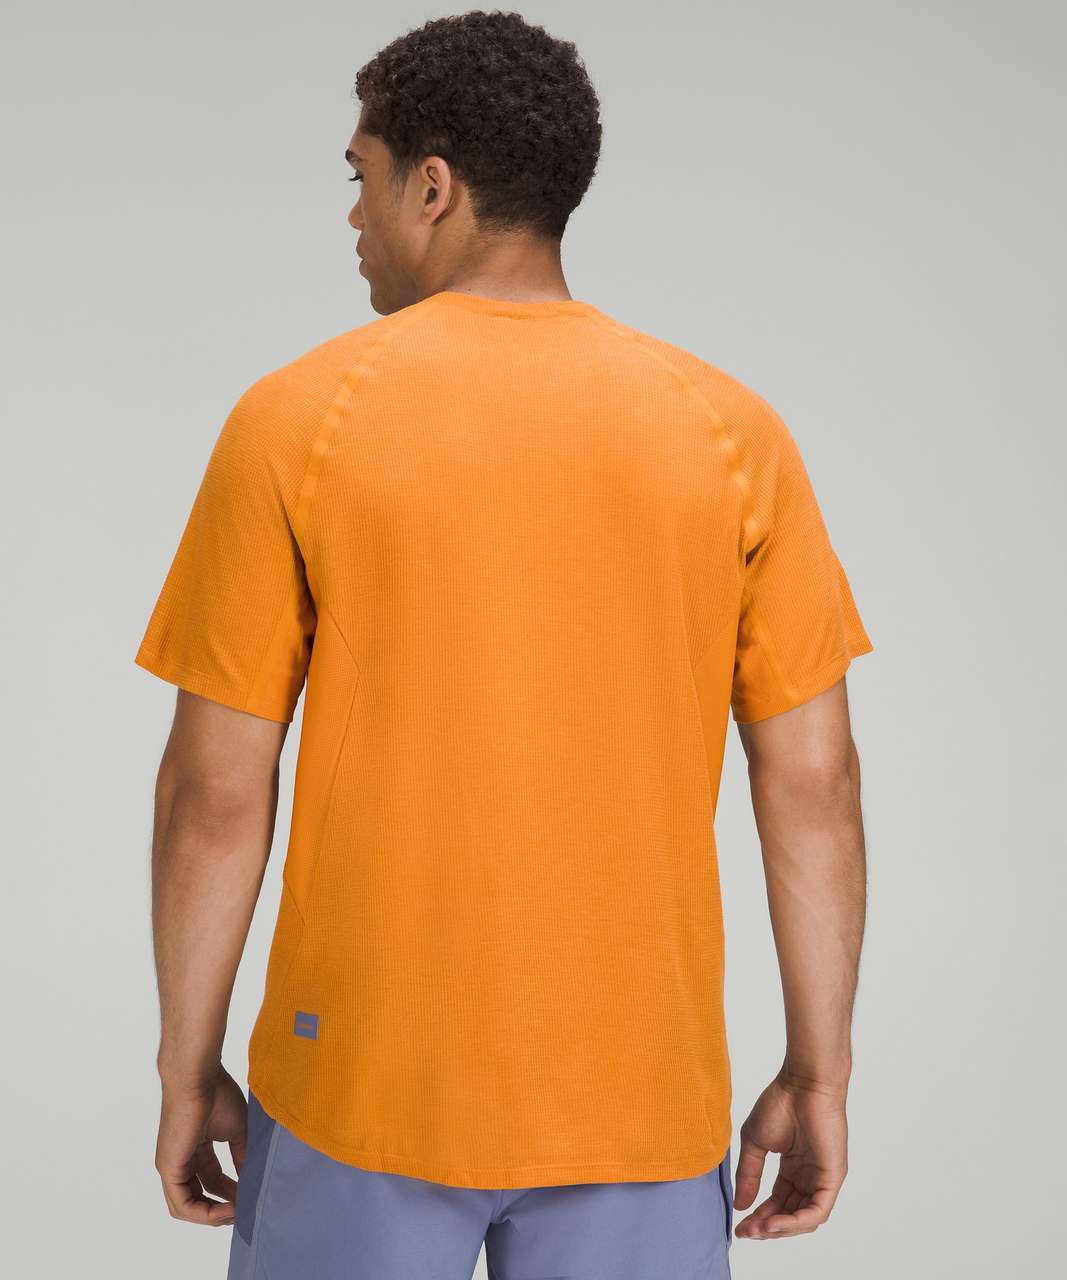 lululemon Orange Top 6 - Reluv Clothing Australia